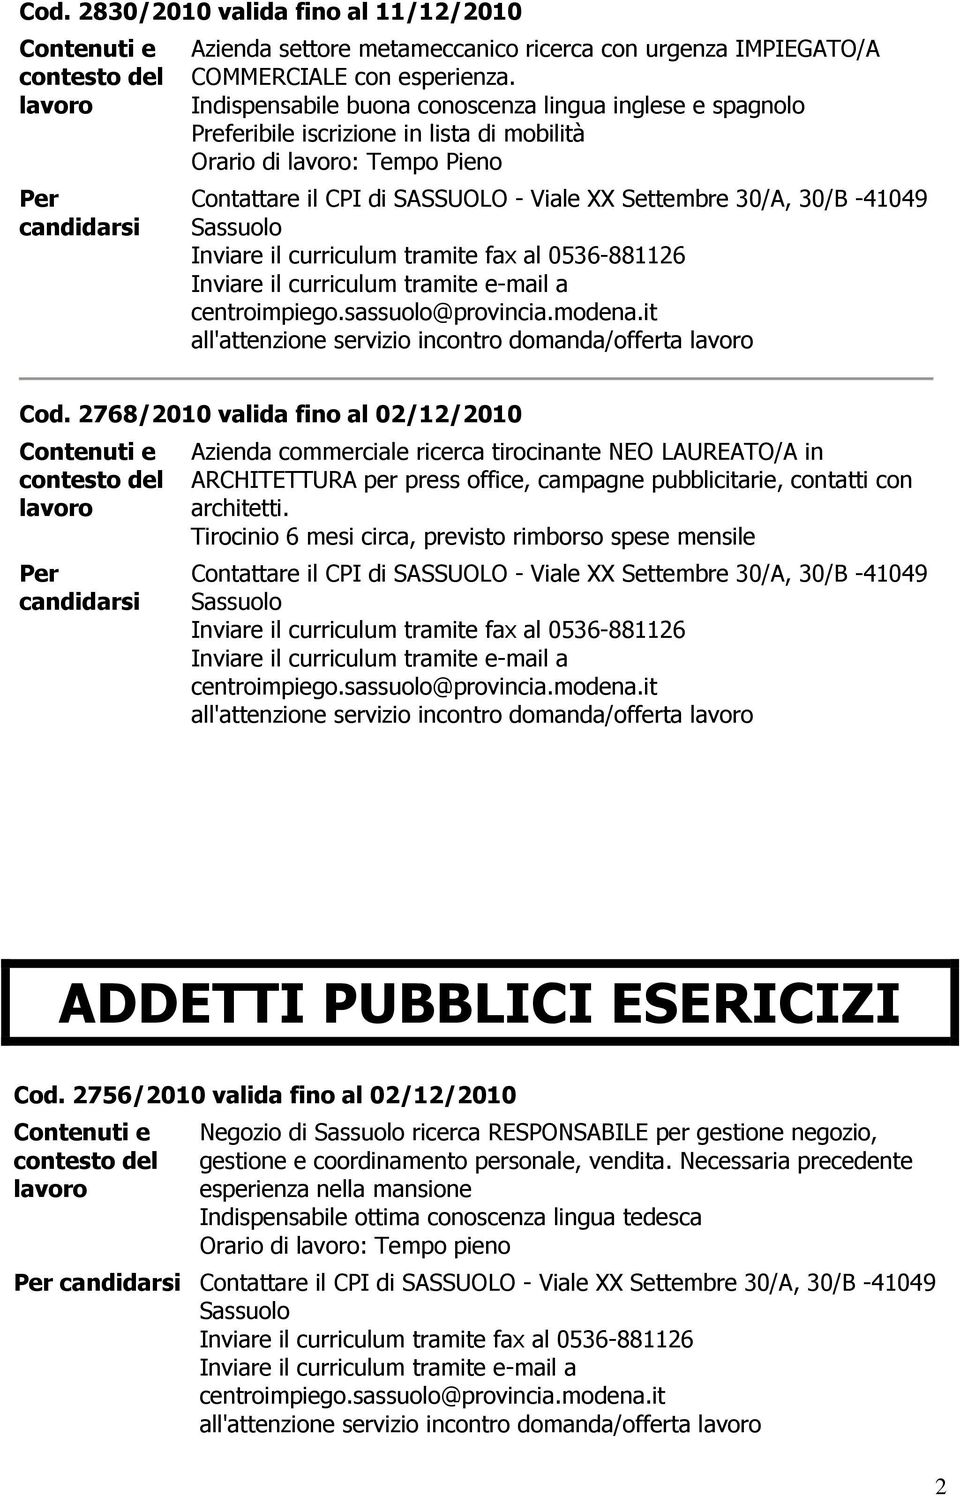 2768/2010 valida fino al 02/12/2010 commerciale ricerca tirocinante NEO LAUREATO/A in ARCHITETTURA per press office, campagne pubblicitarie, contatti con architetti.